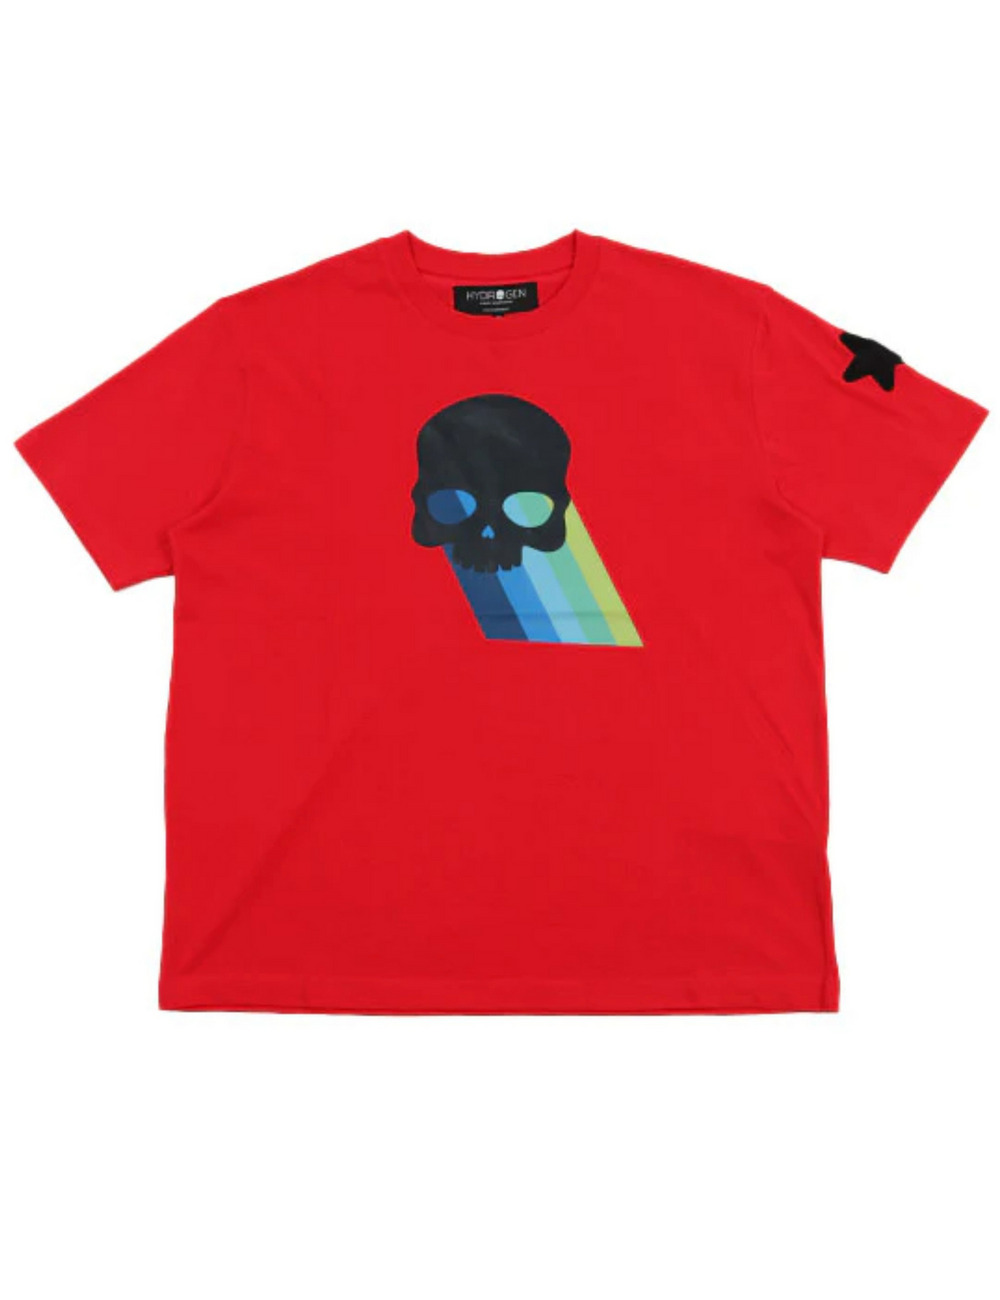 レインボースカルTシャツ(半袖) / RAINBOW SKULL T SHIRT 詳細画像 レッド 1